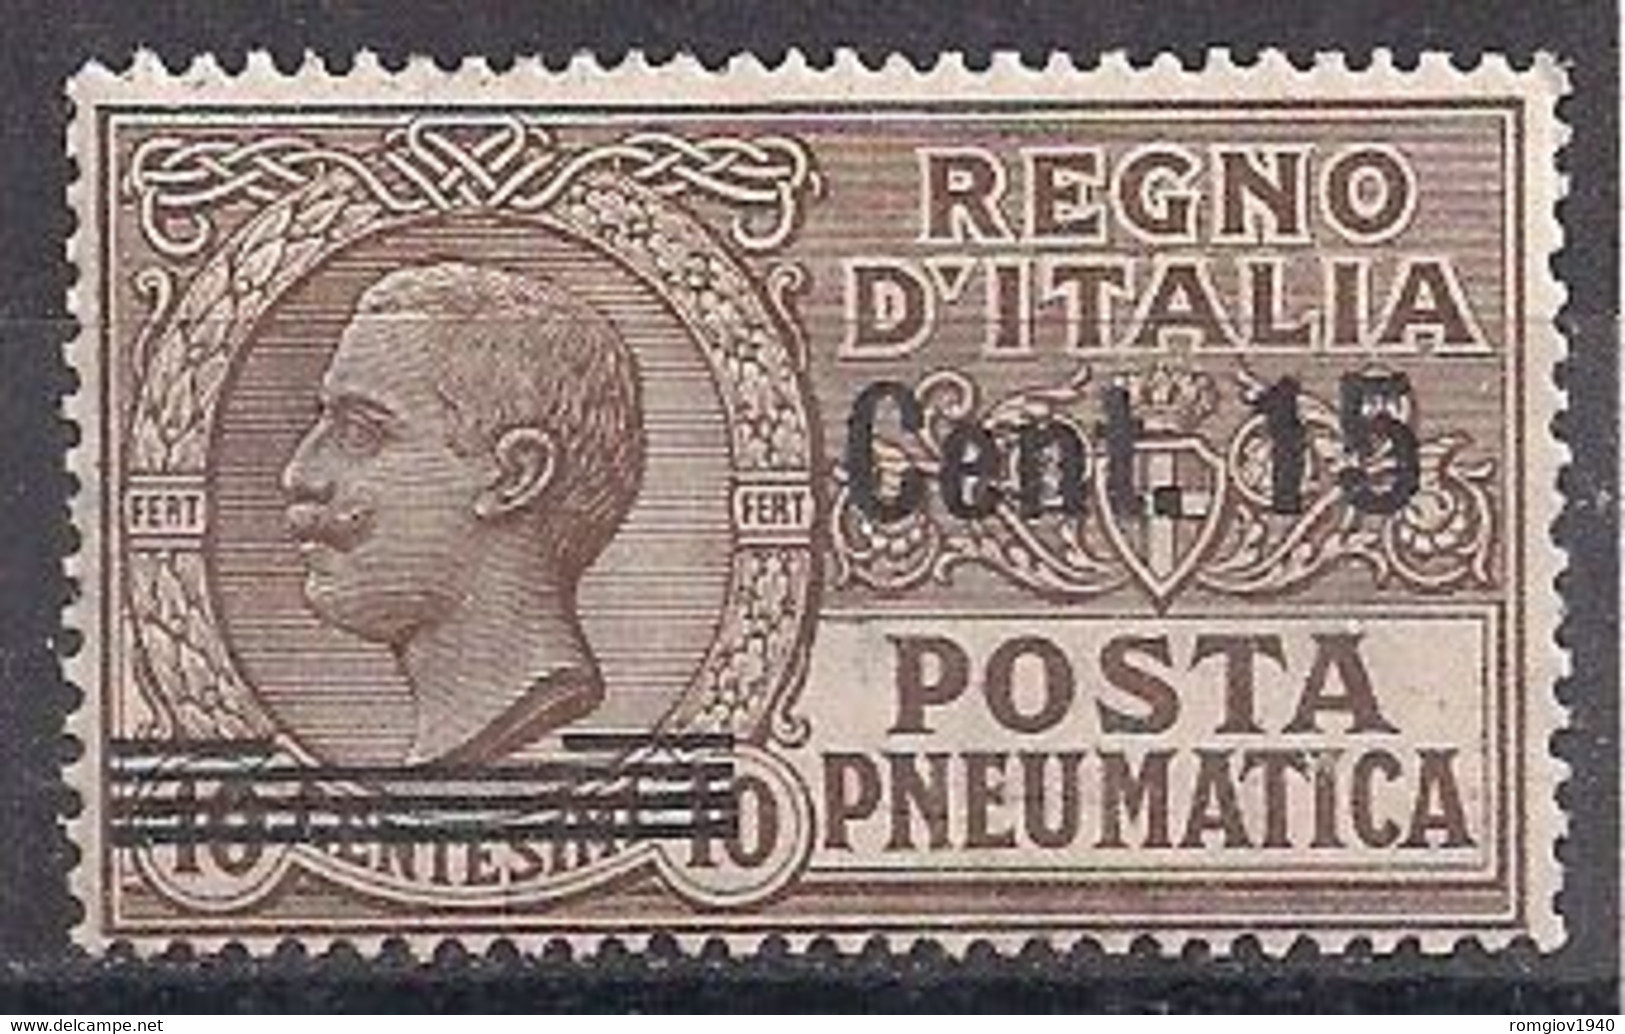 REGNO D'ITALIA POSTA PNEUMATICA 1913-1923 EFFIGE DI V.EMANUELE III SASS. 4 MLH VF - Pneumatic Mail